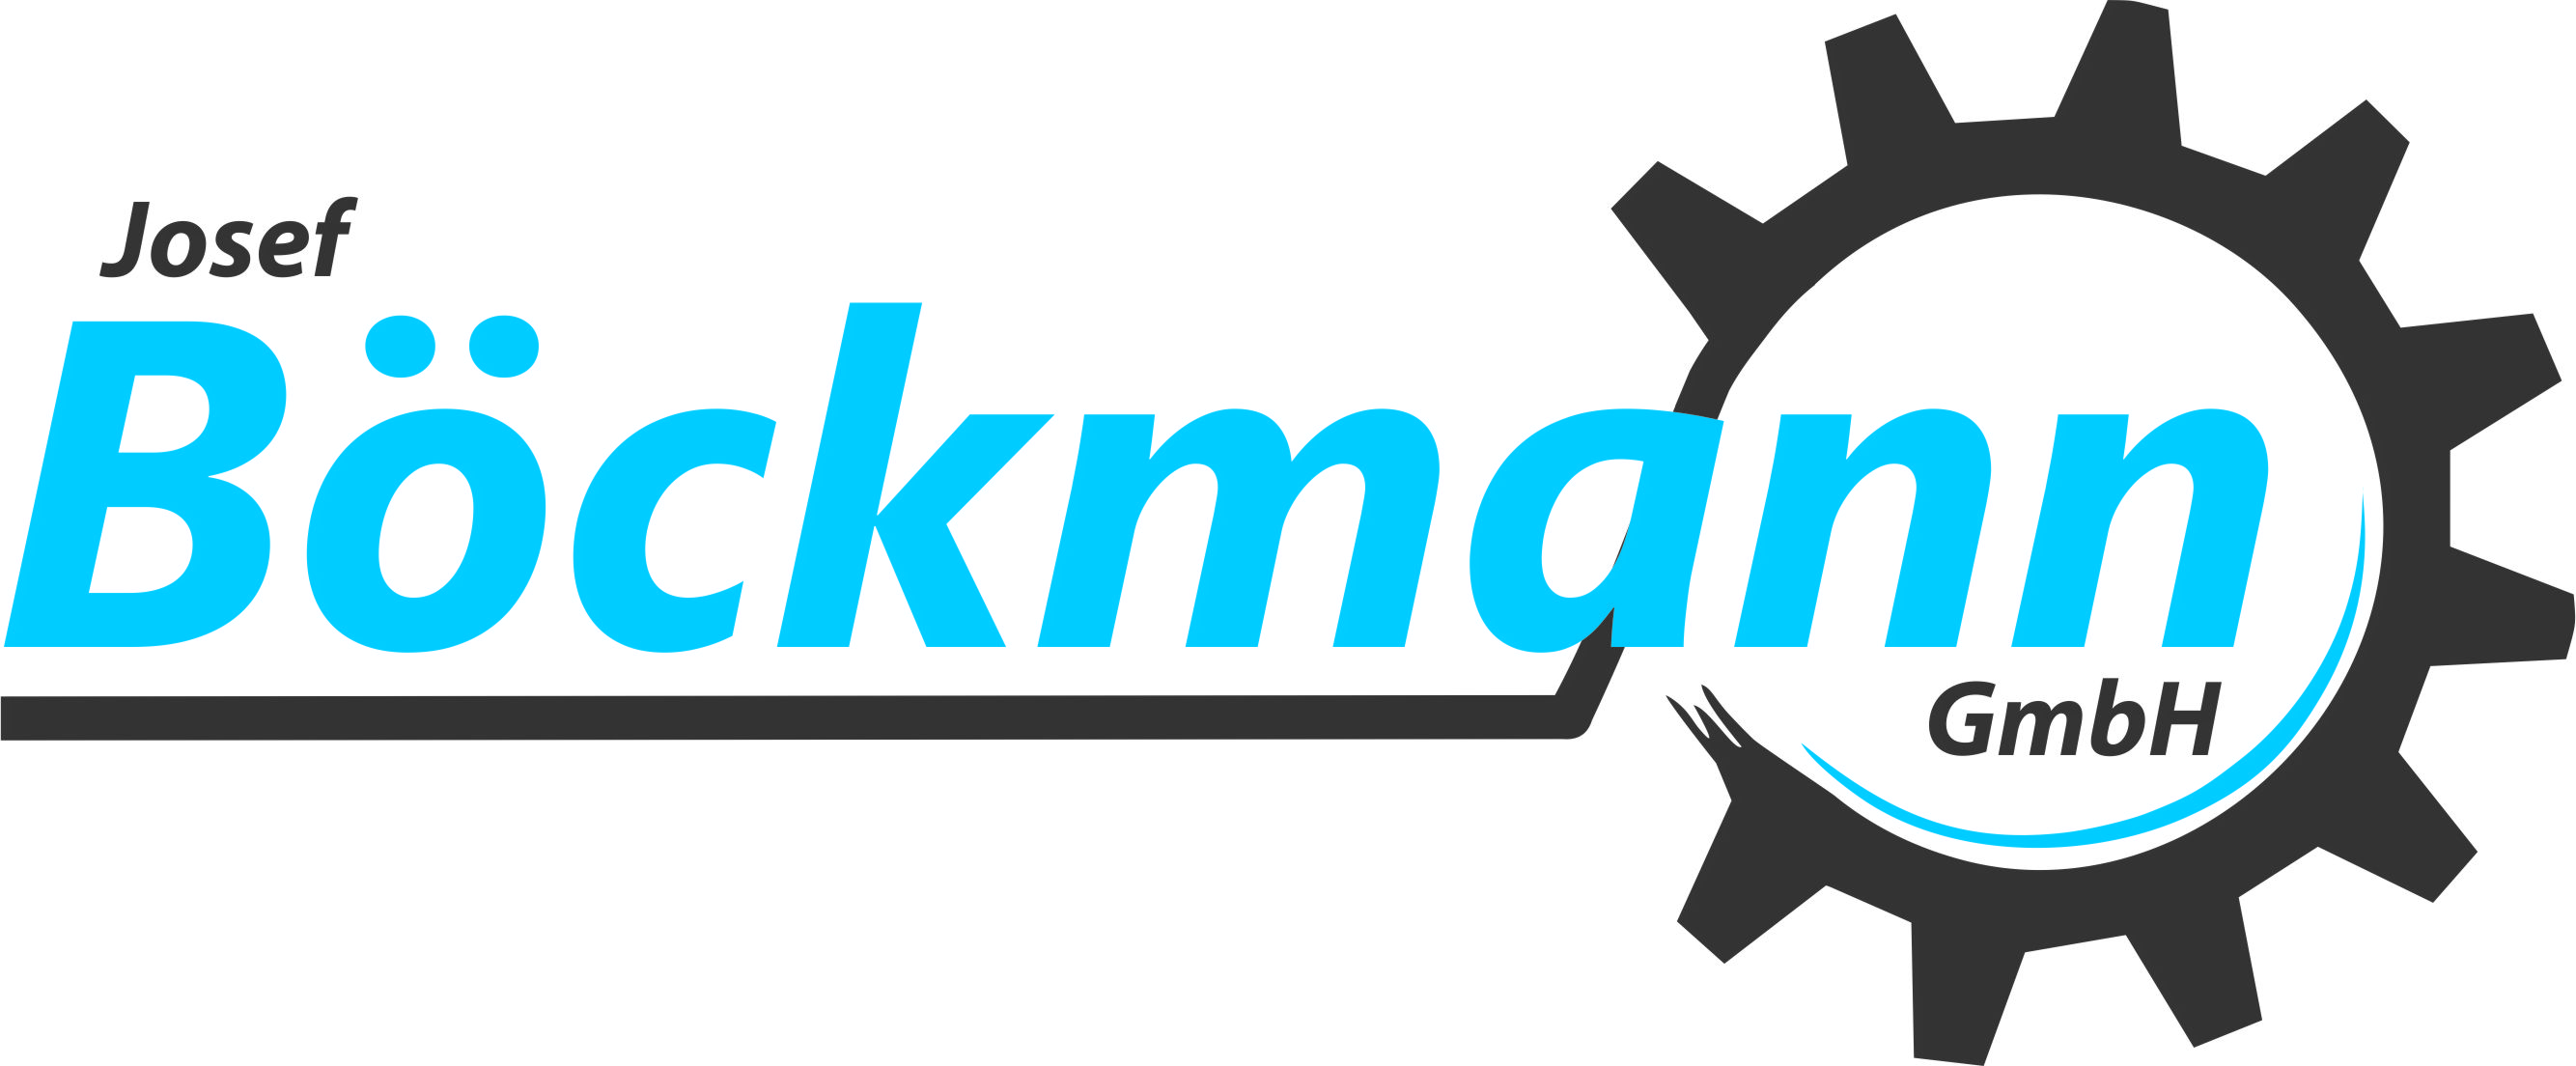 Logo Boeckmann